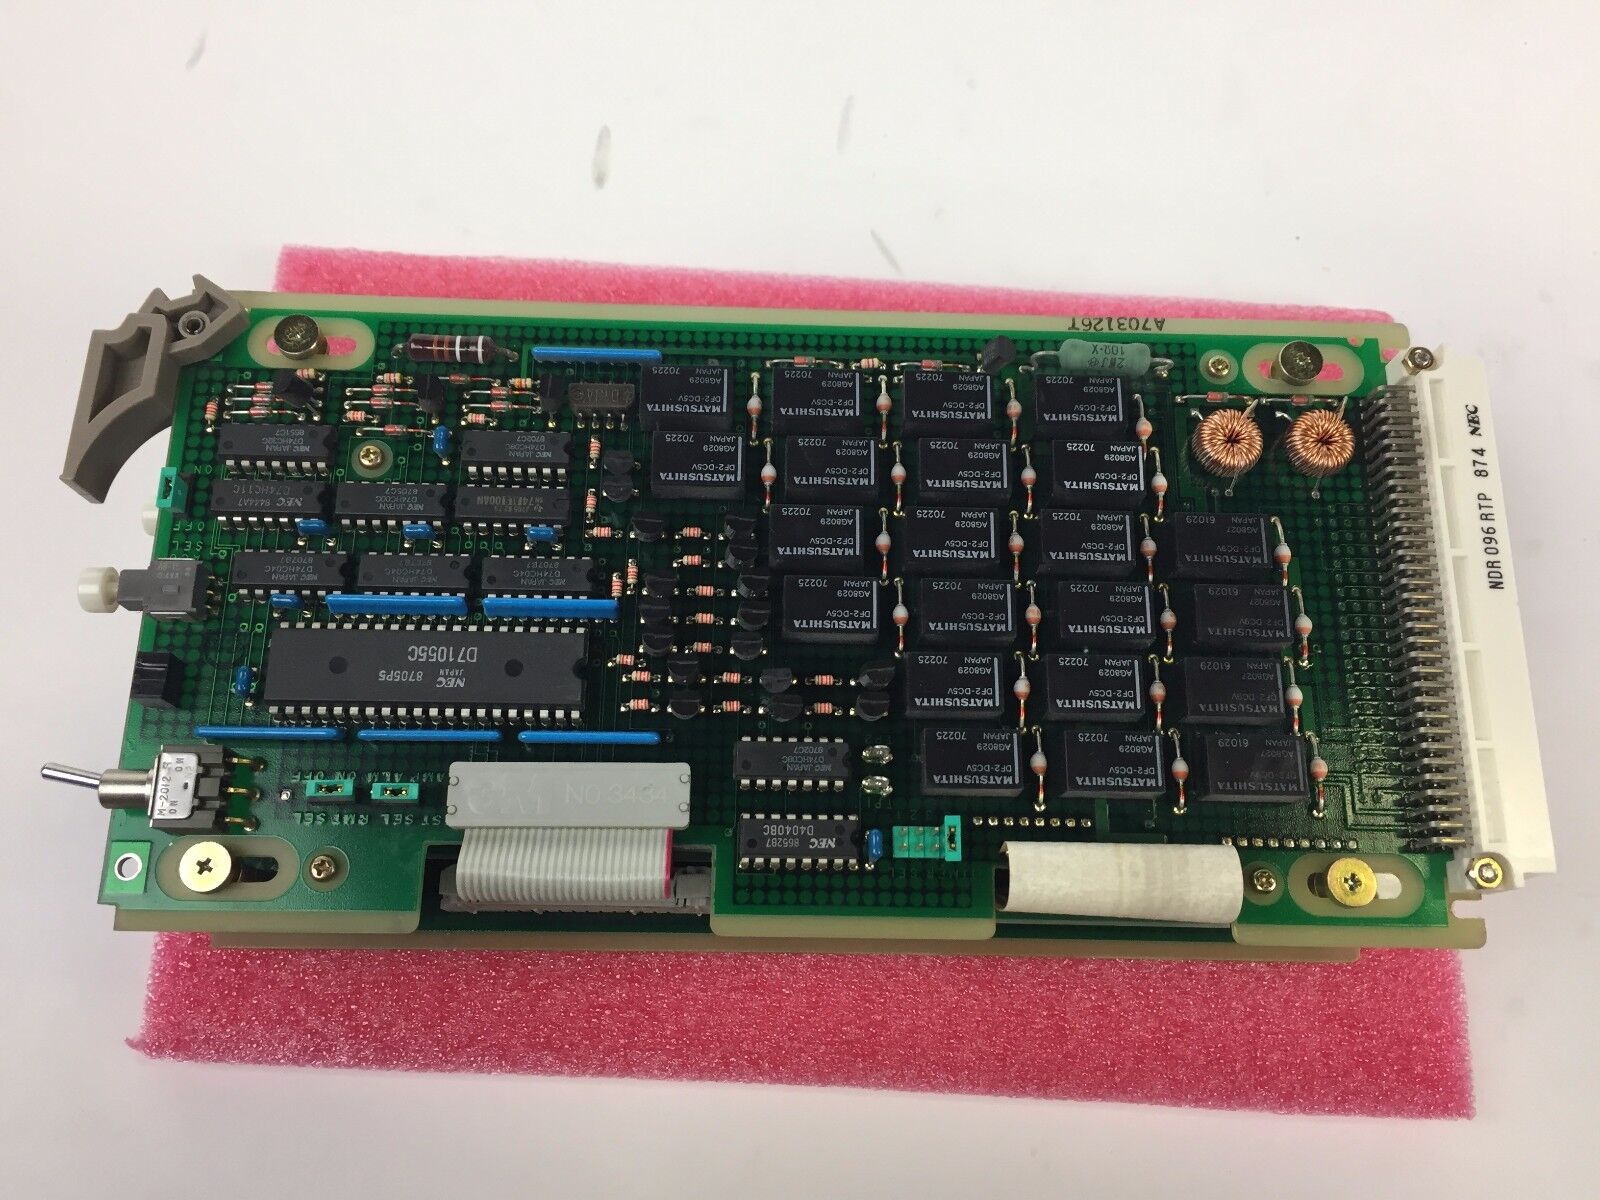 NEC NDR096RTP 874 88-12 X0314 A01 930 Circuit Board